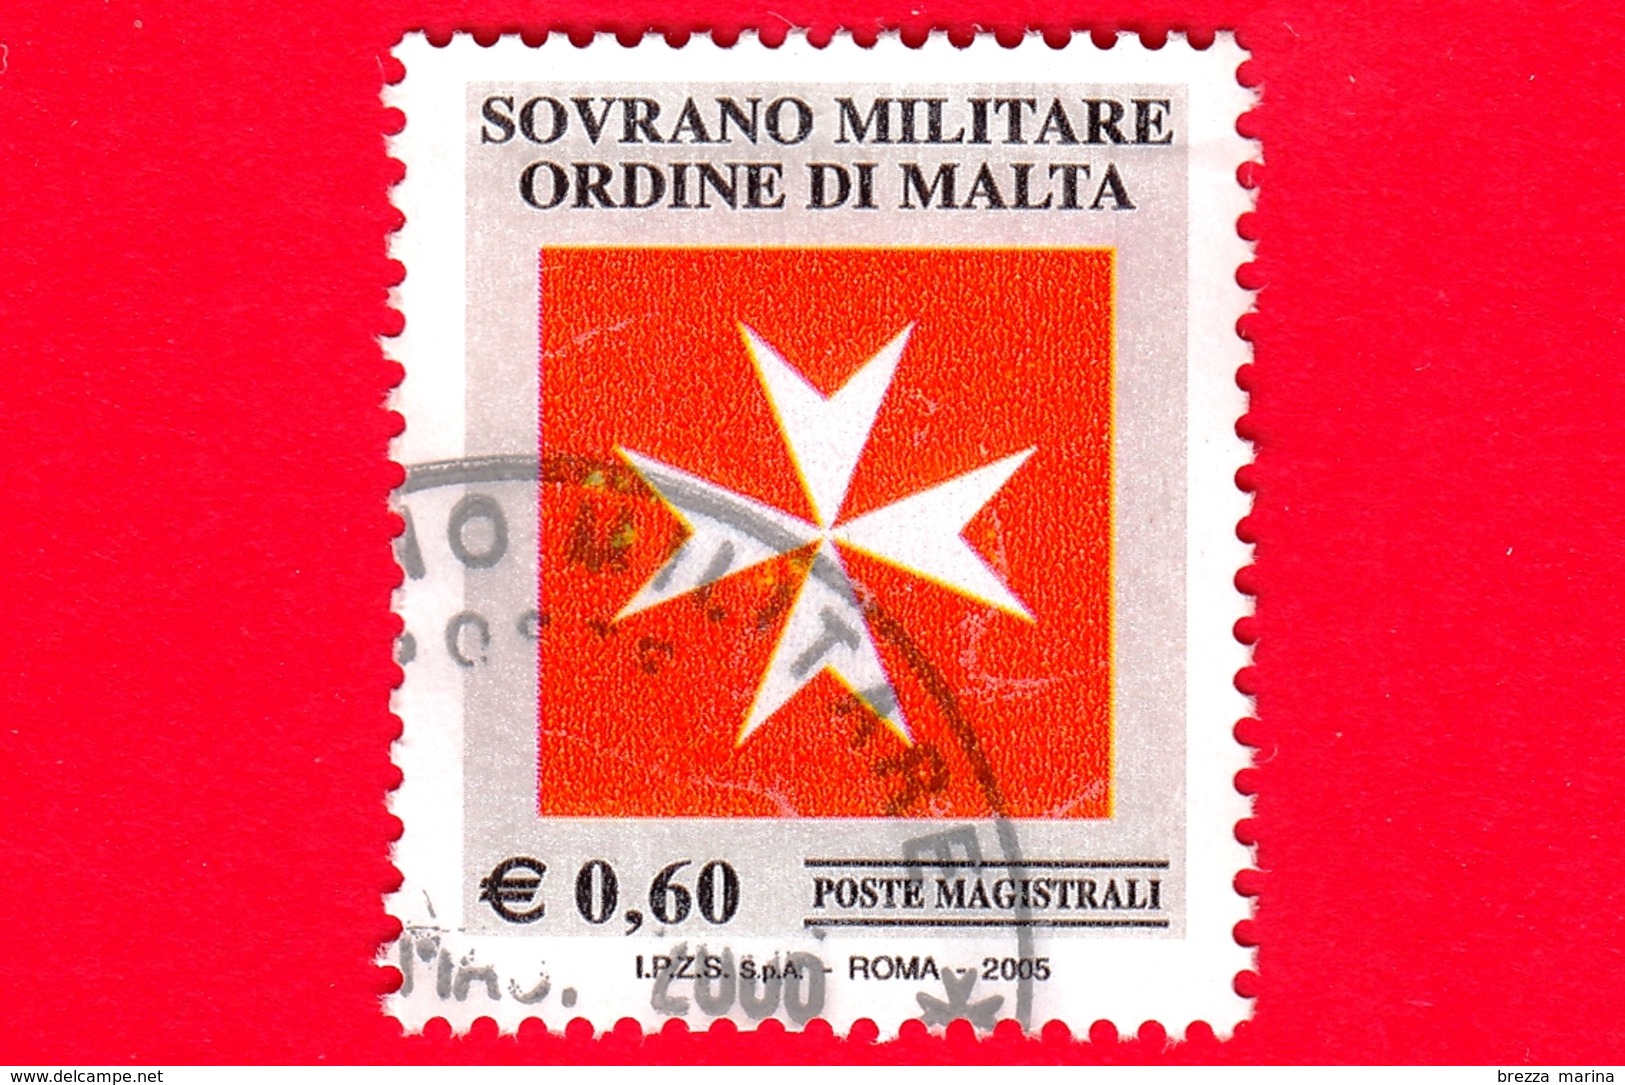 SMOM - Sovrano Militare Ordine Di Malta - Usato - 2005 - Croce Ottagona Bianca Su Fondo Rosso - 0.60 - Malta (Orden Von)